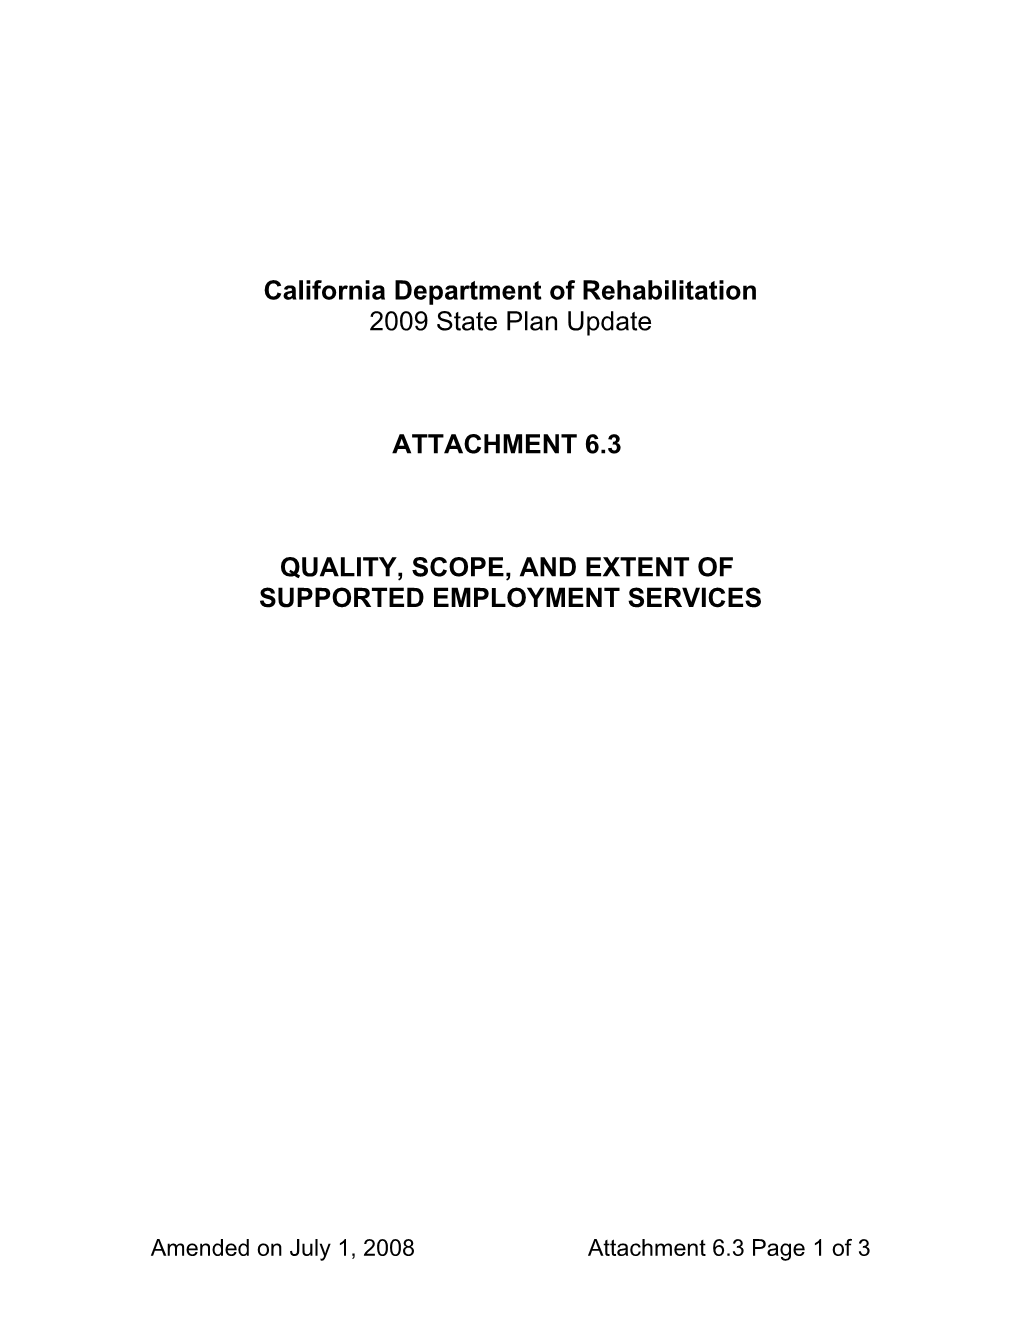 California Department of Rehabilitation s2